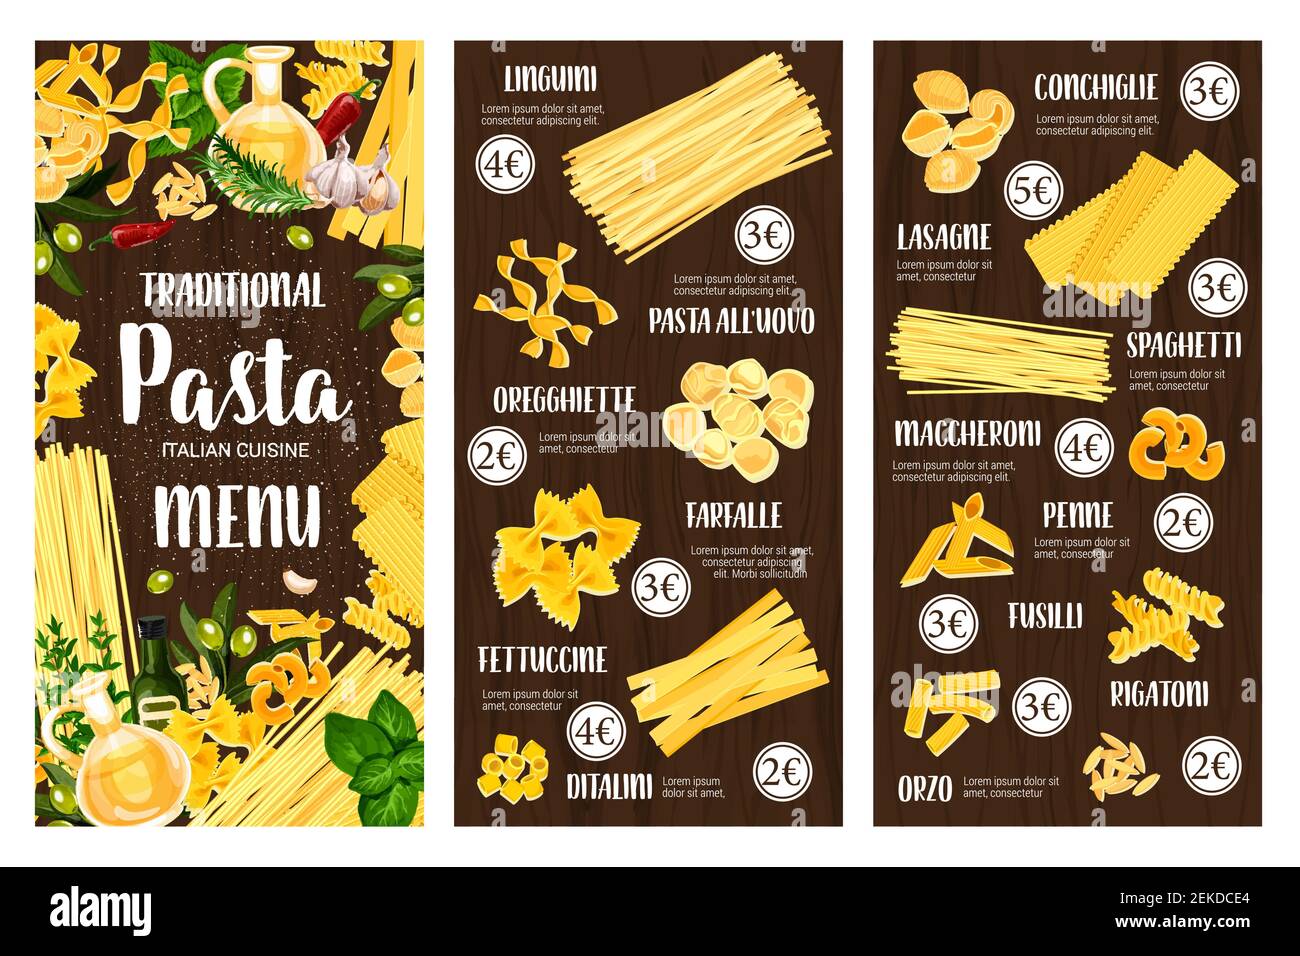 Pasta, spaghetti e maccheroni menu vettoriale di cucina italiana. Penne, farfalle e fusilli, conchiglie, lasagna e rigatoni, linguine, fettuccine e. Illustrazione Vettoriale